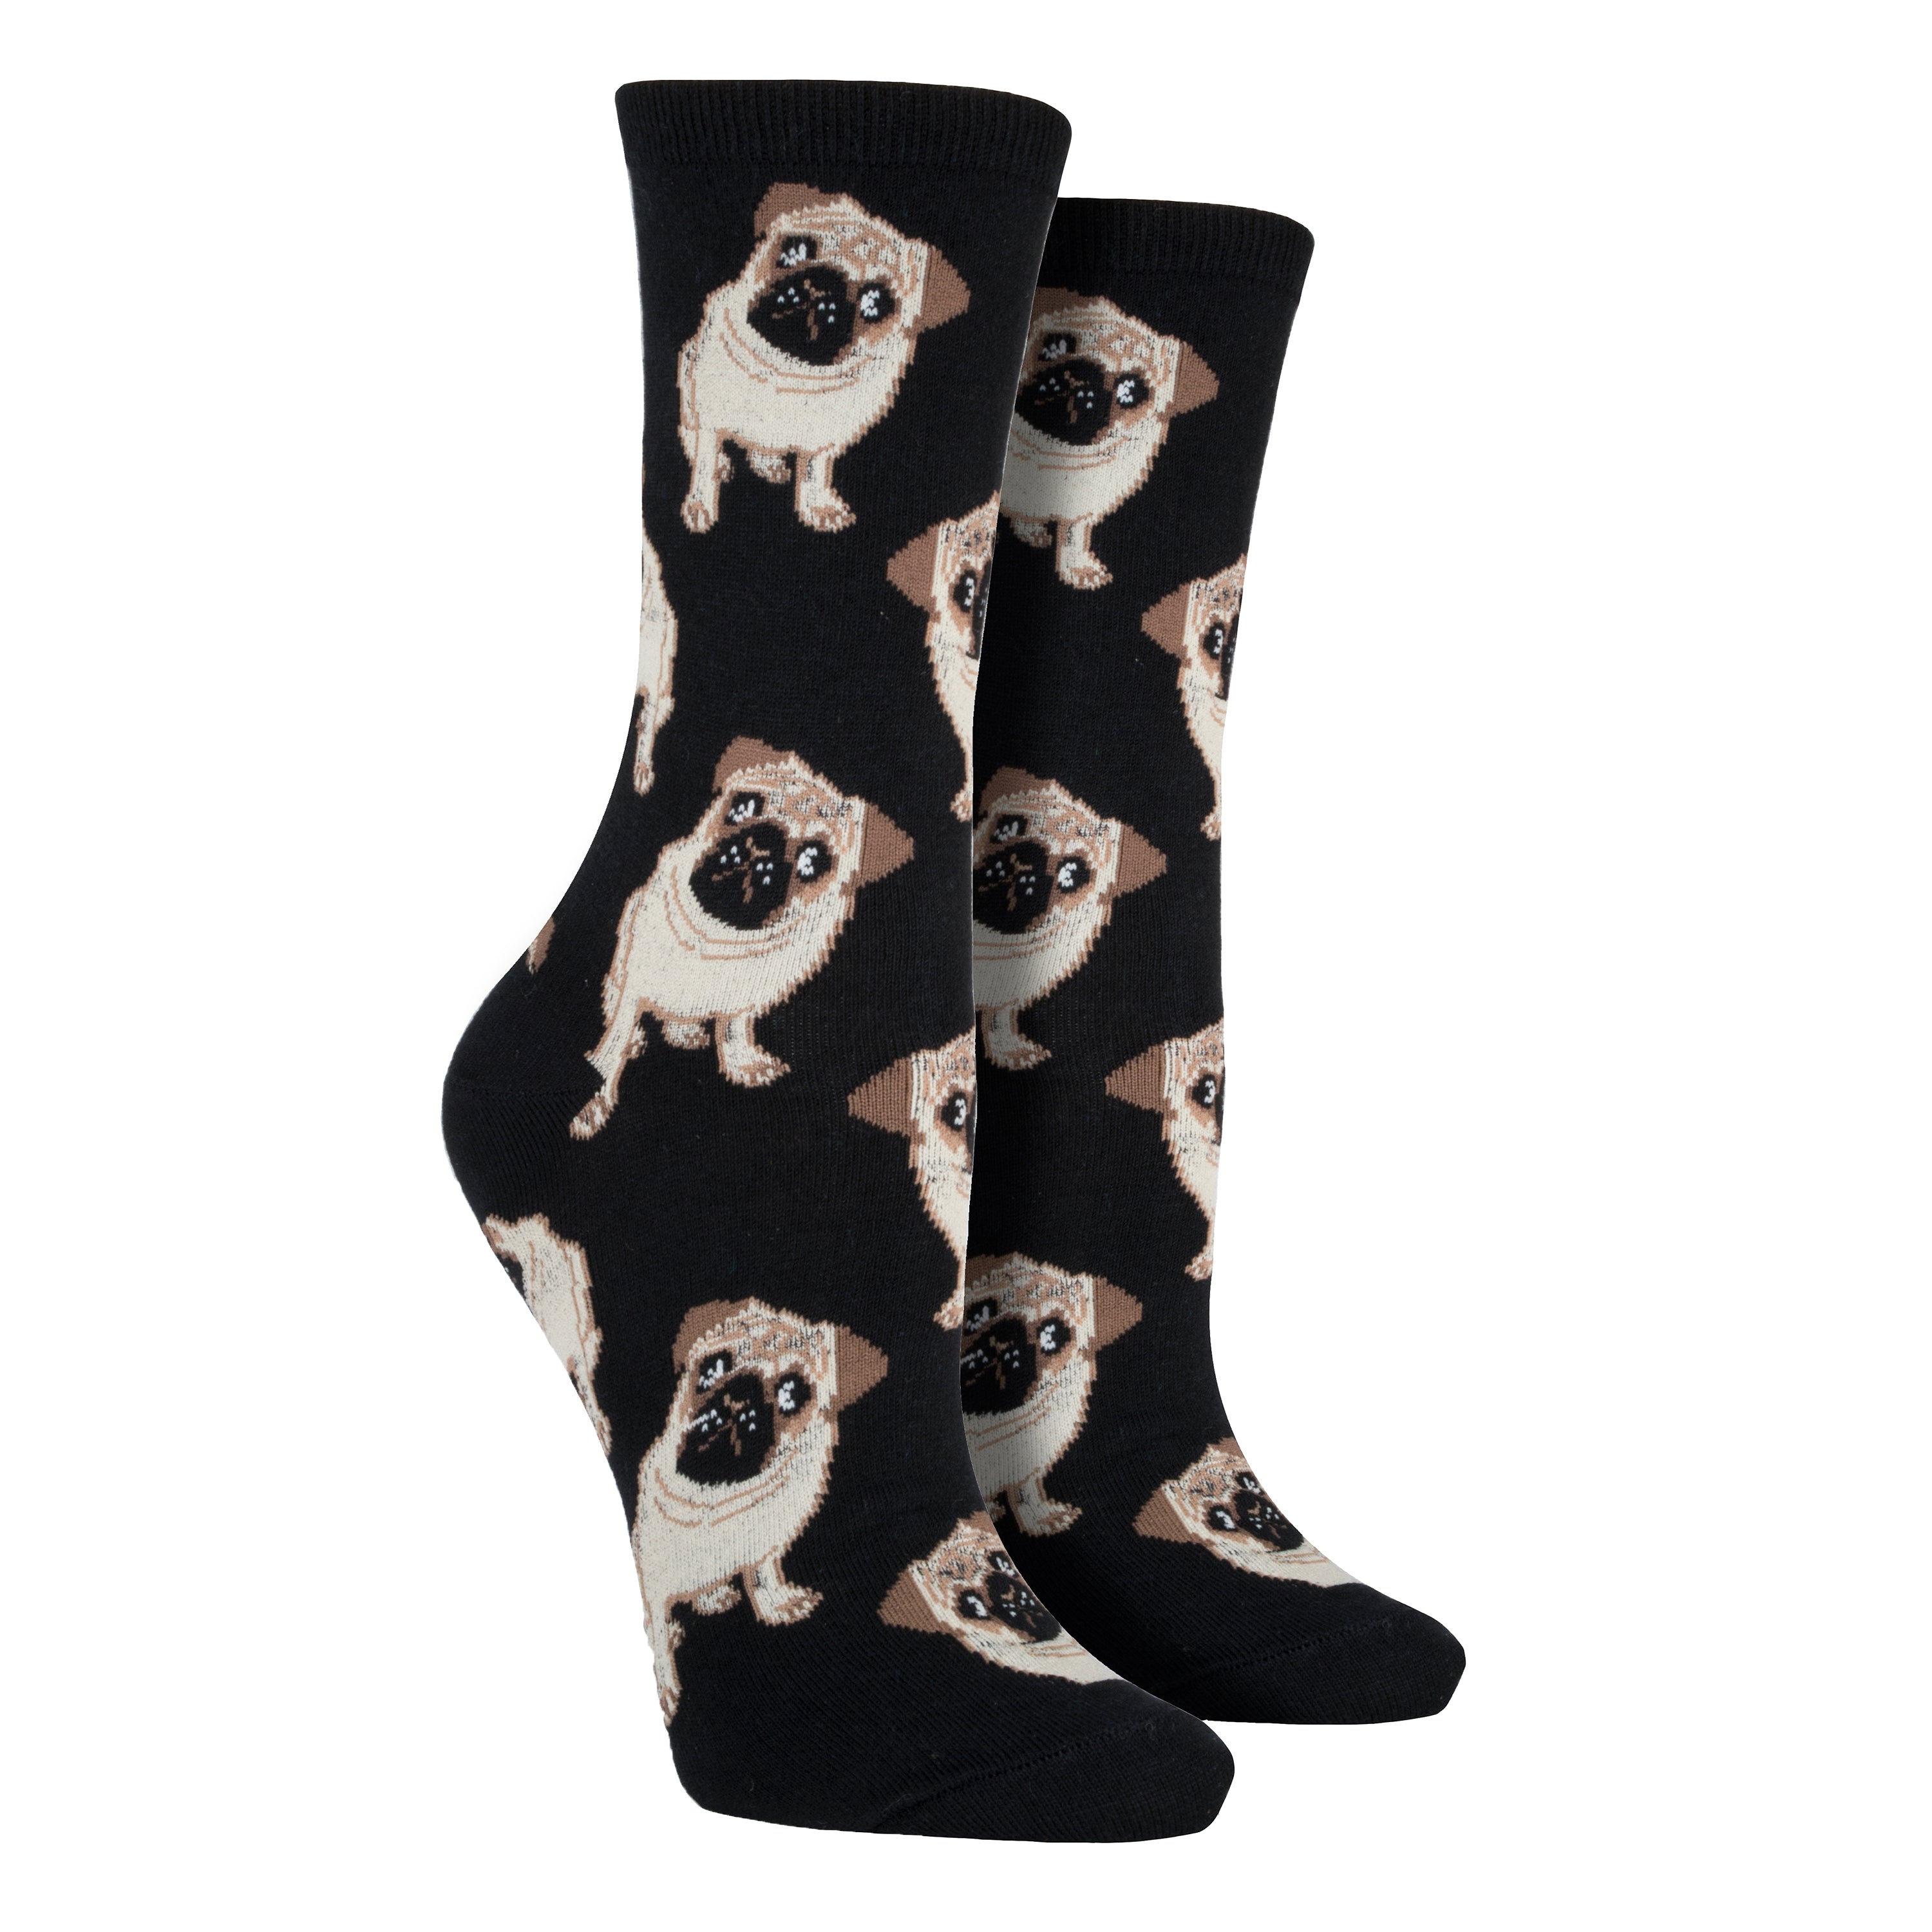 Women's Pugs Socks